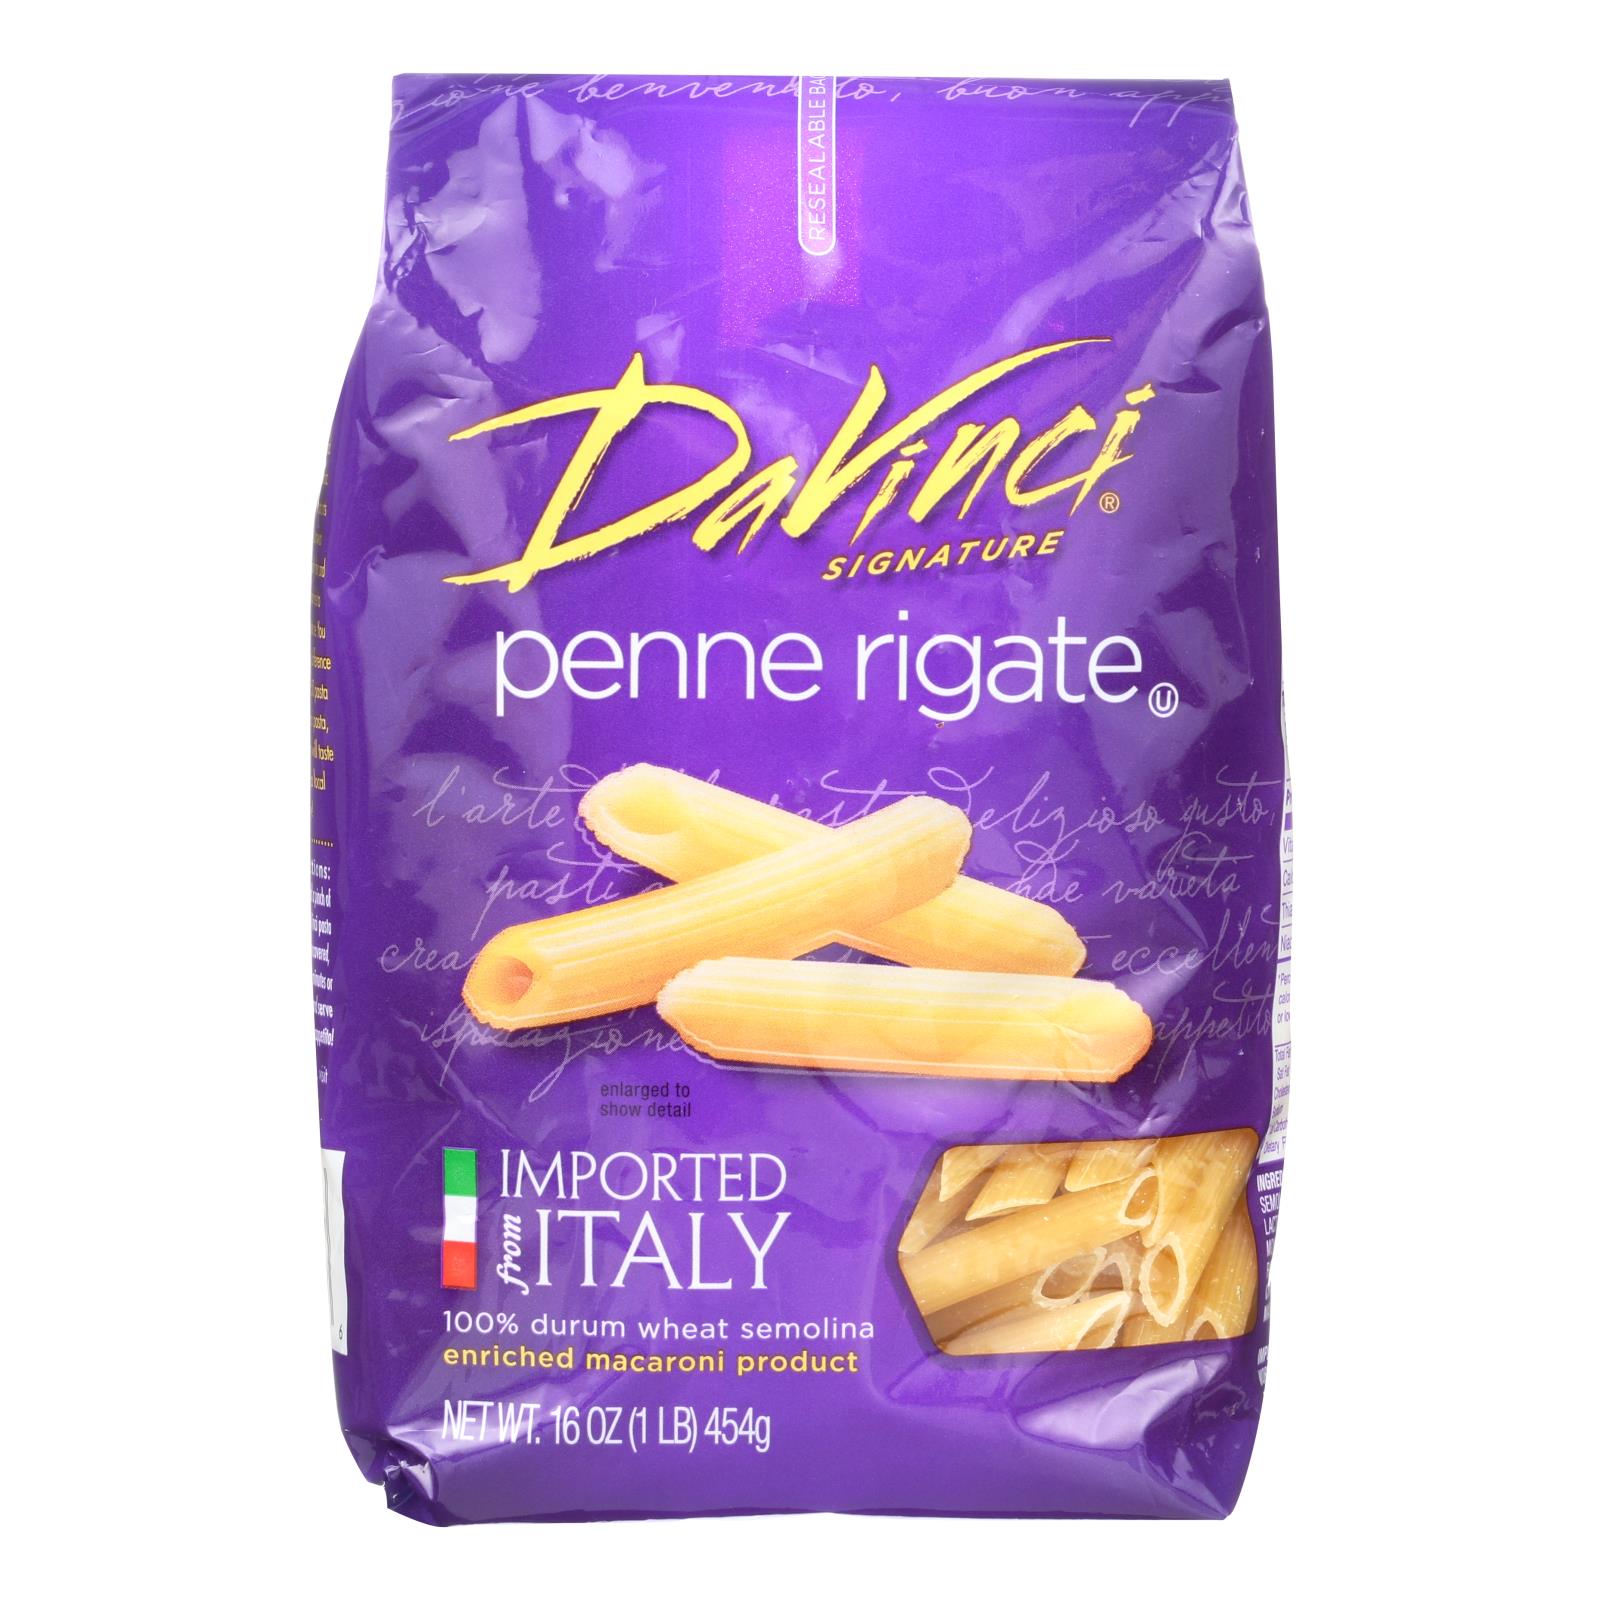 Davinci - Penne Rigate Pasta - Case Of 12 - 1 Lb.